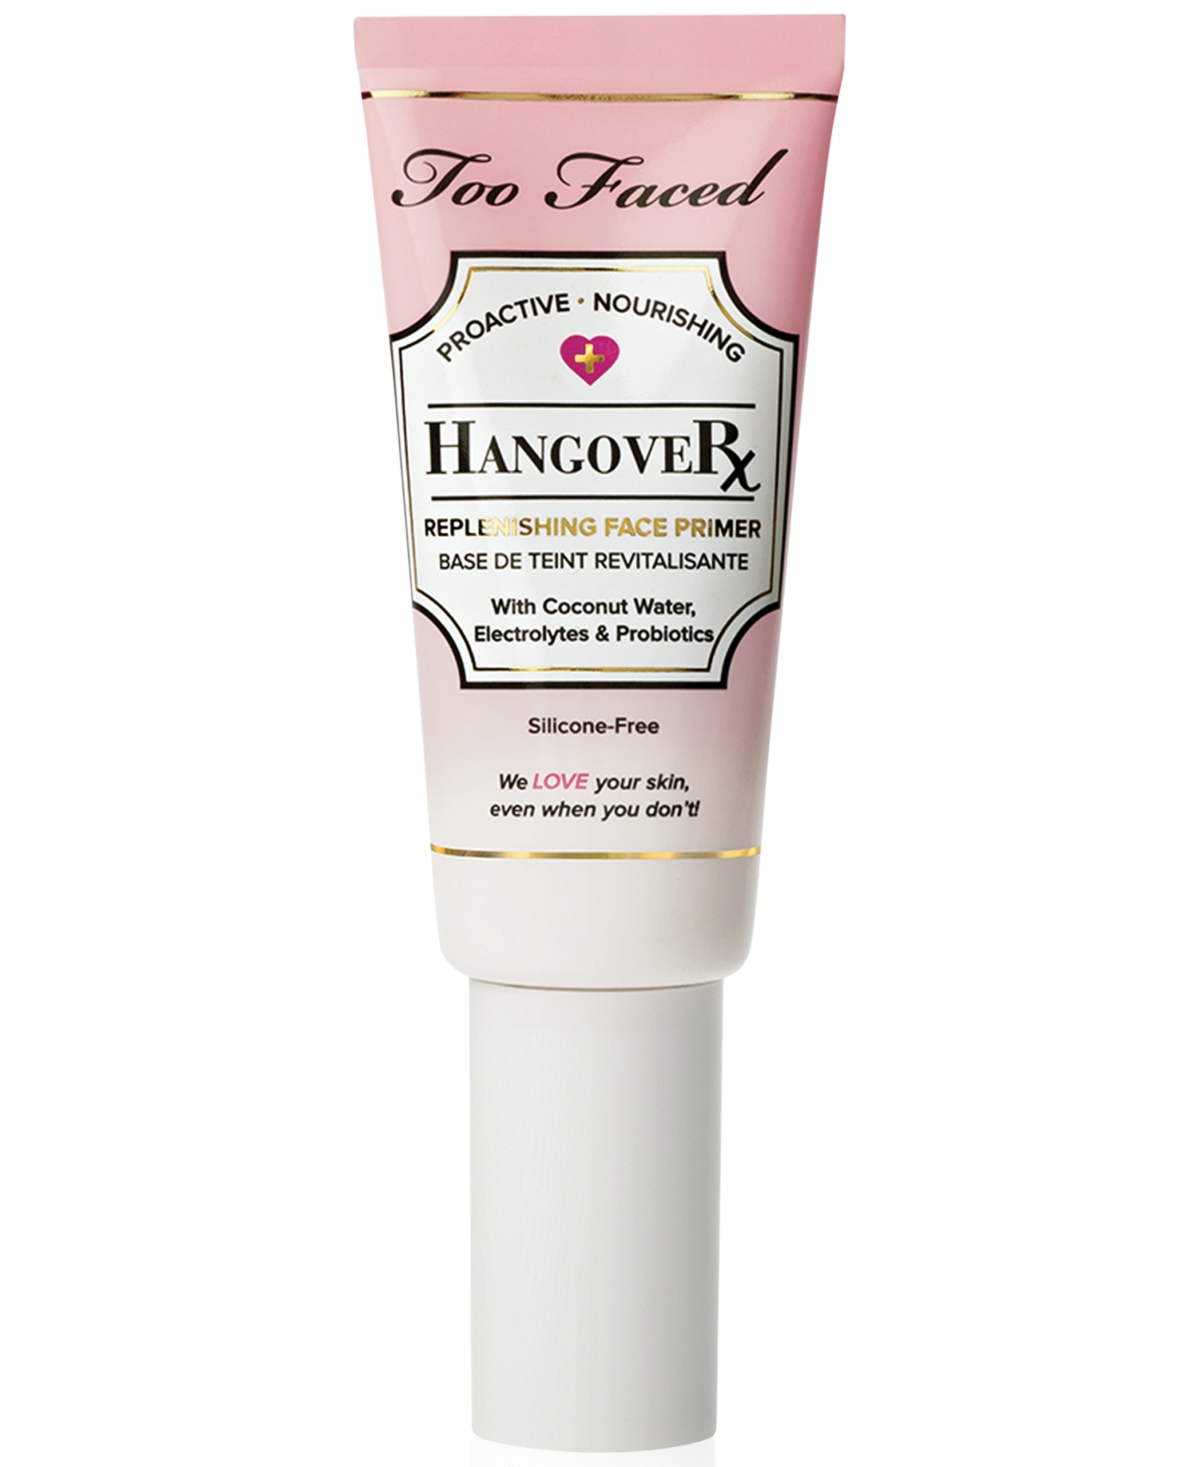 Hangover Hydrating & Replenishing Skin-Loving Face Primer, 1.35 oz. - Hangover Face Primer